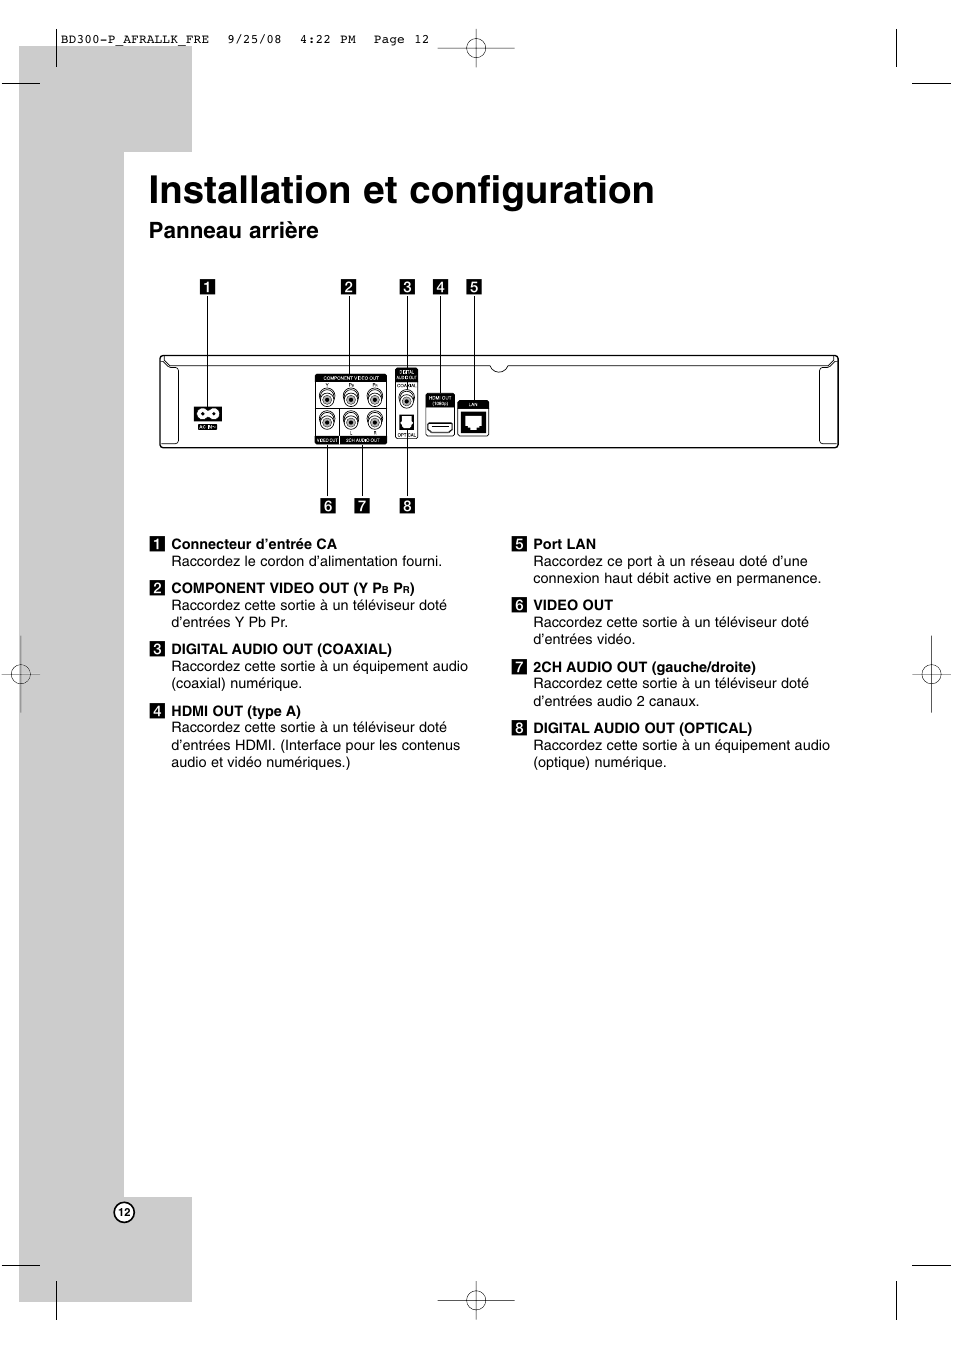 Installation et configuration, Panneau arrière | LG BD300 Manuel d'utilisation | Page 12 / 40